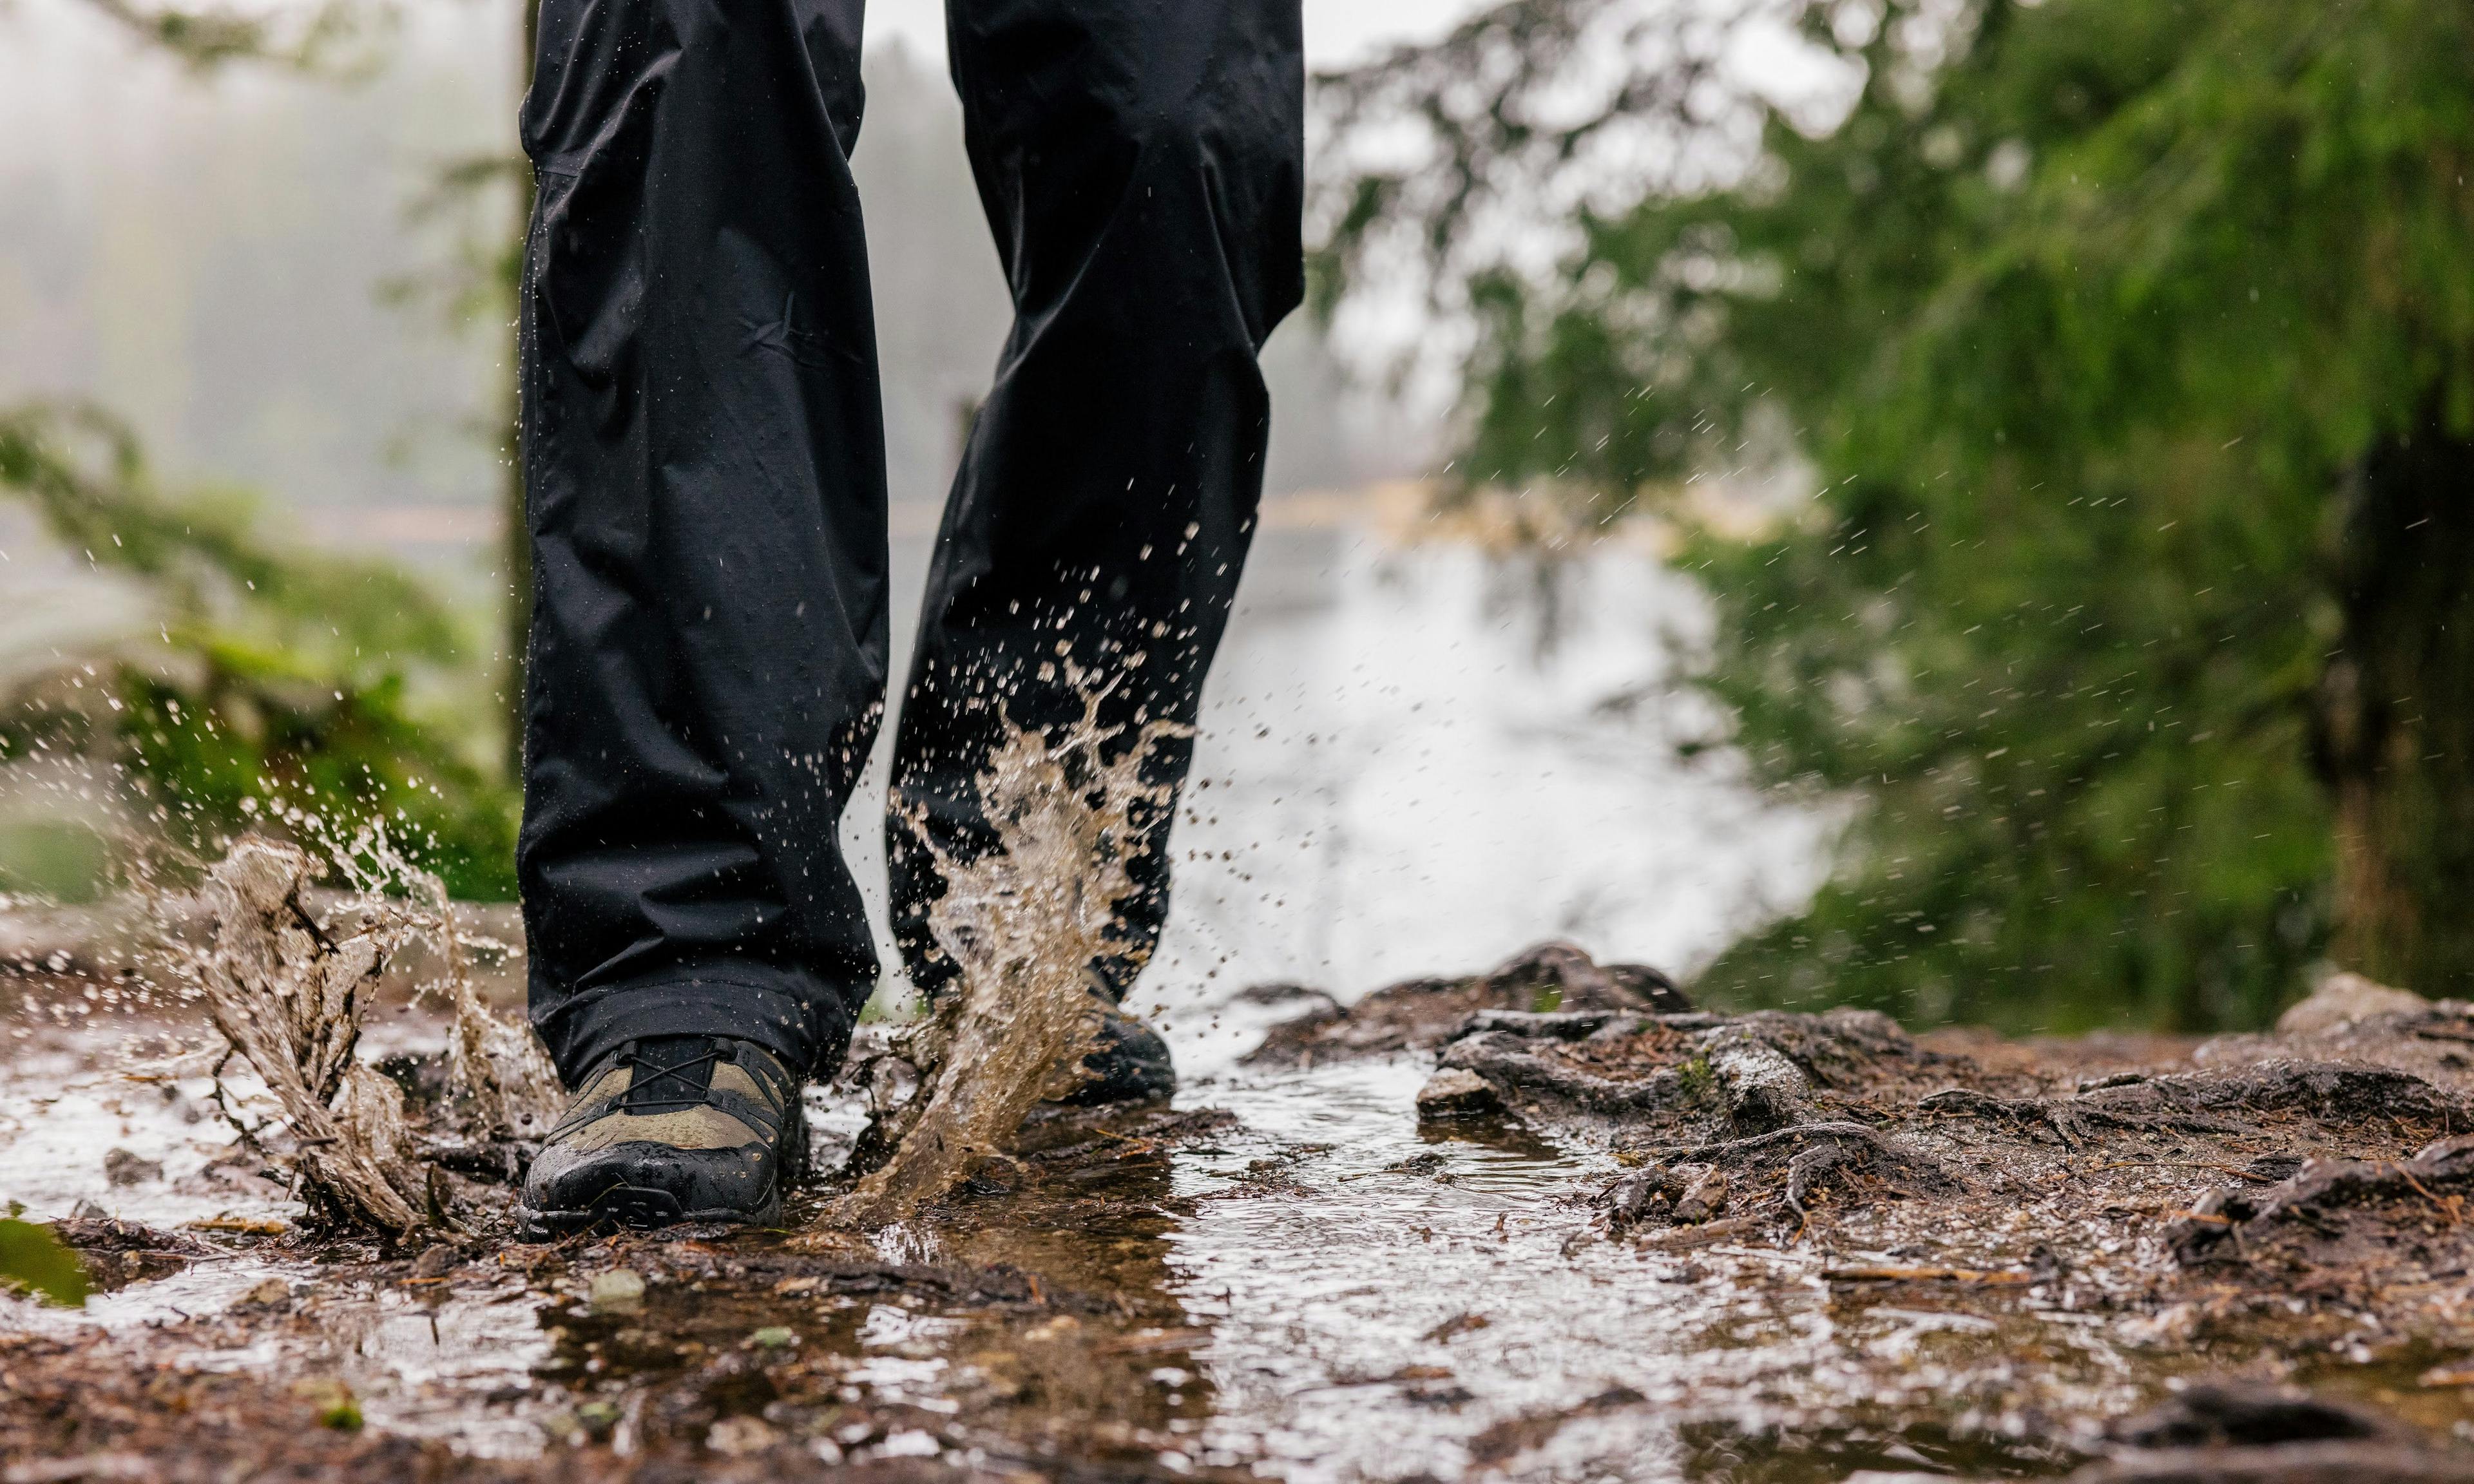 Hiker in rain pants splashing through big muddy puddle on trail